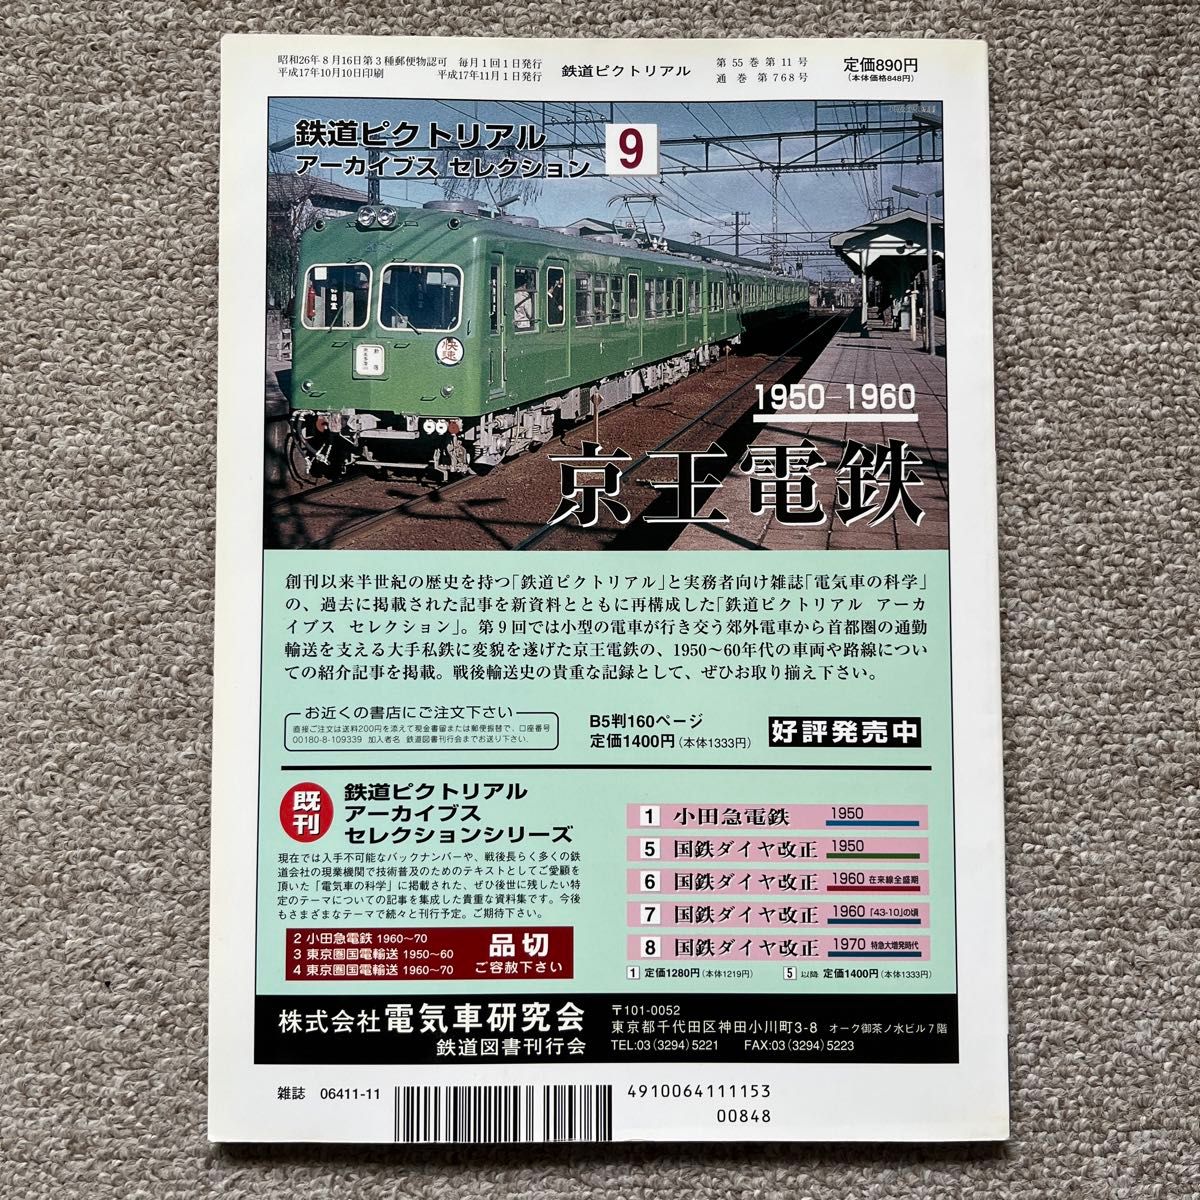 鉄道ピクトリアル　No.768　2005年 11月号　【特集】遜色急行